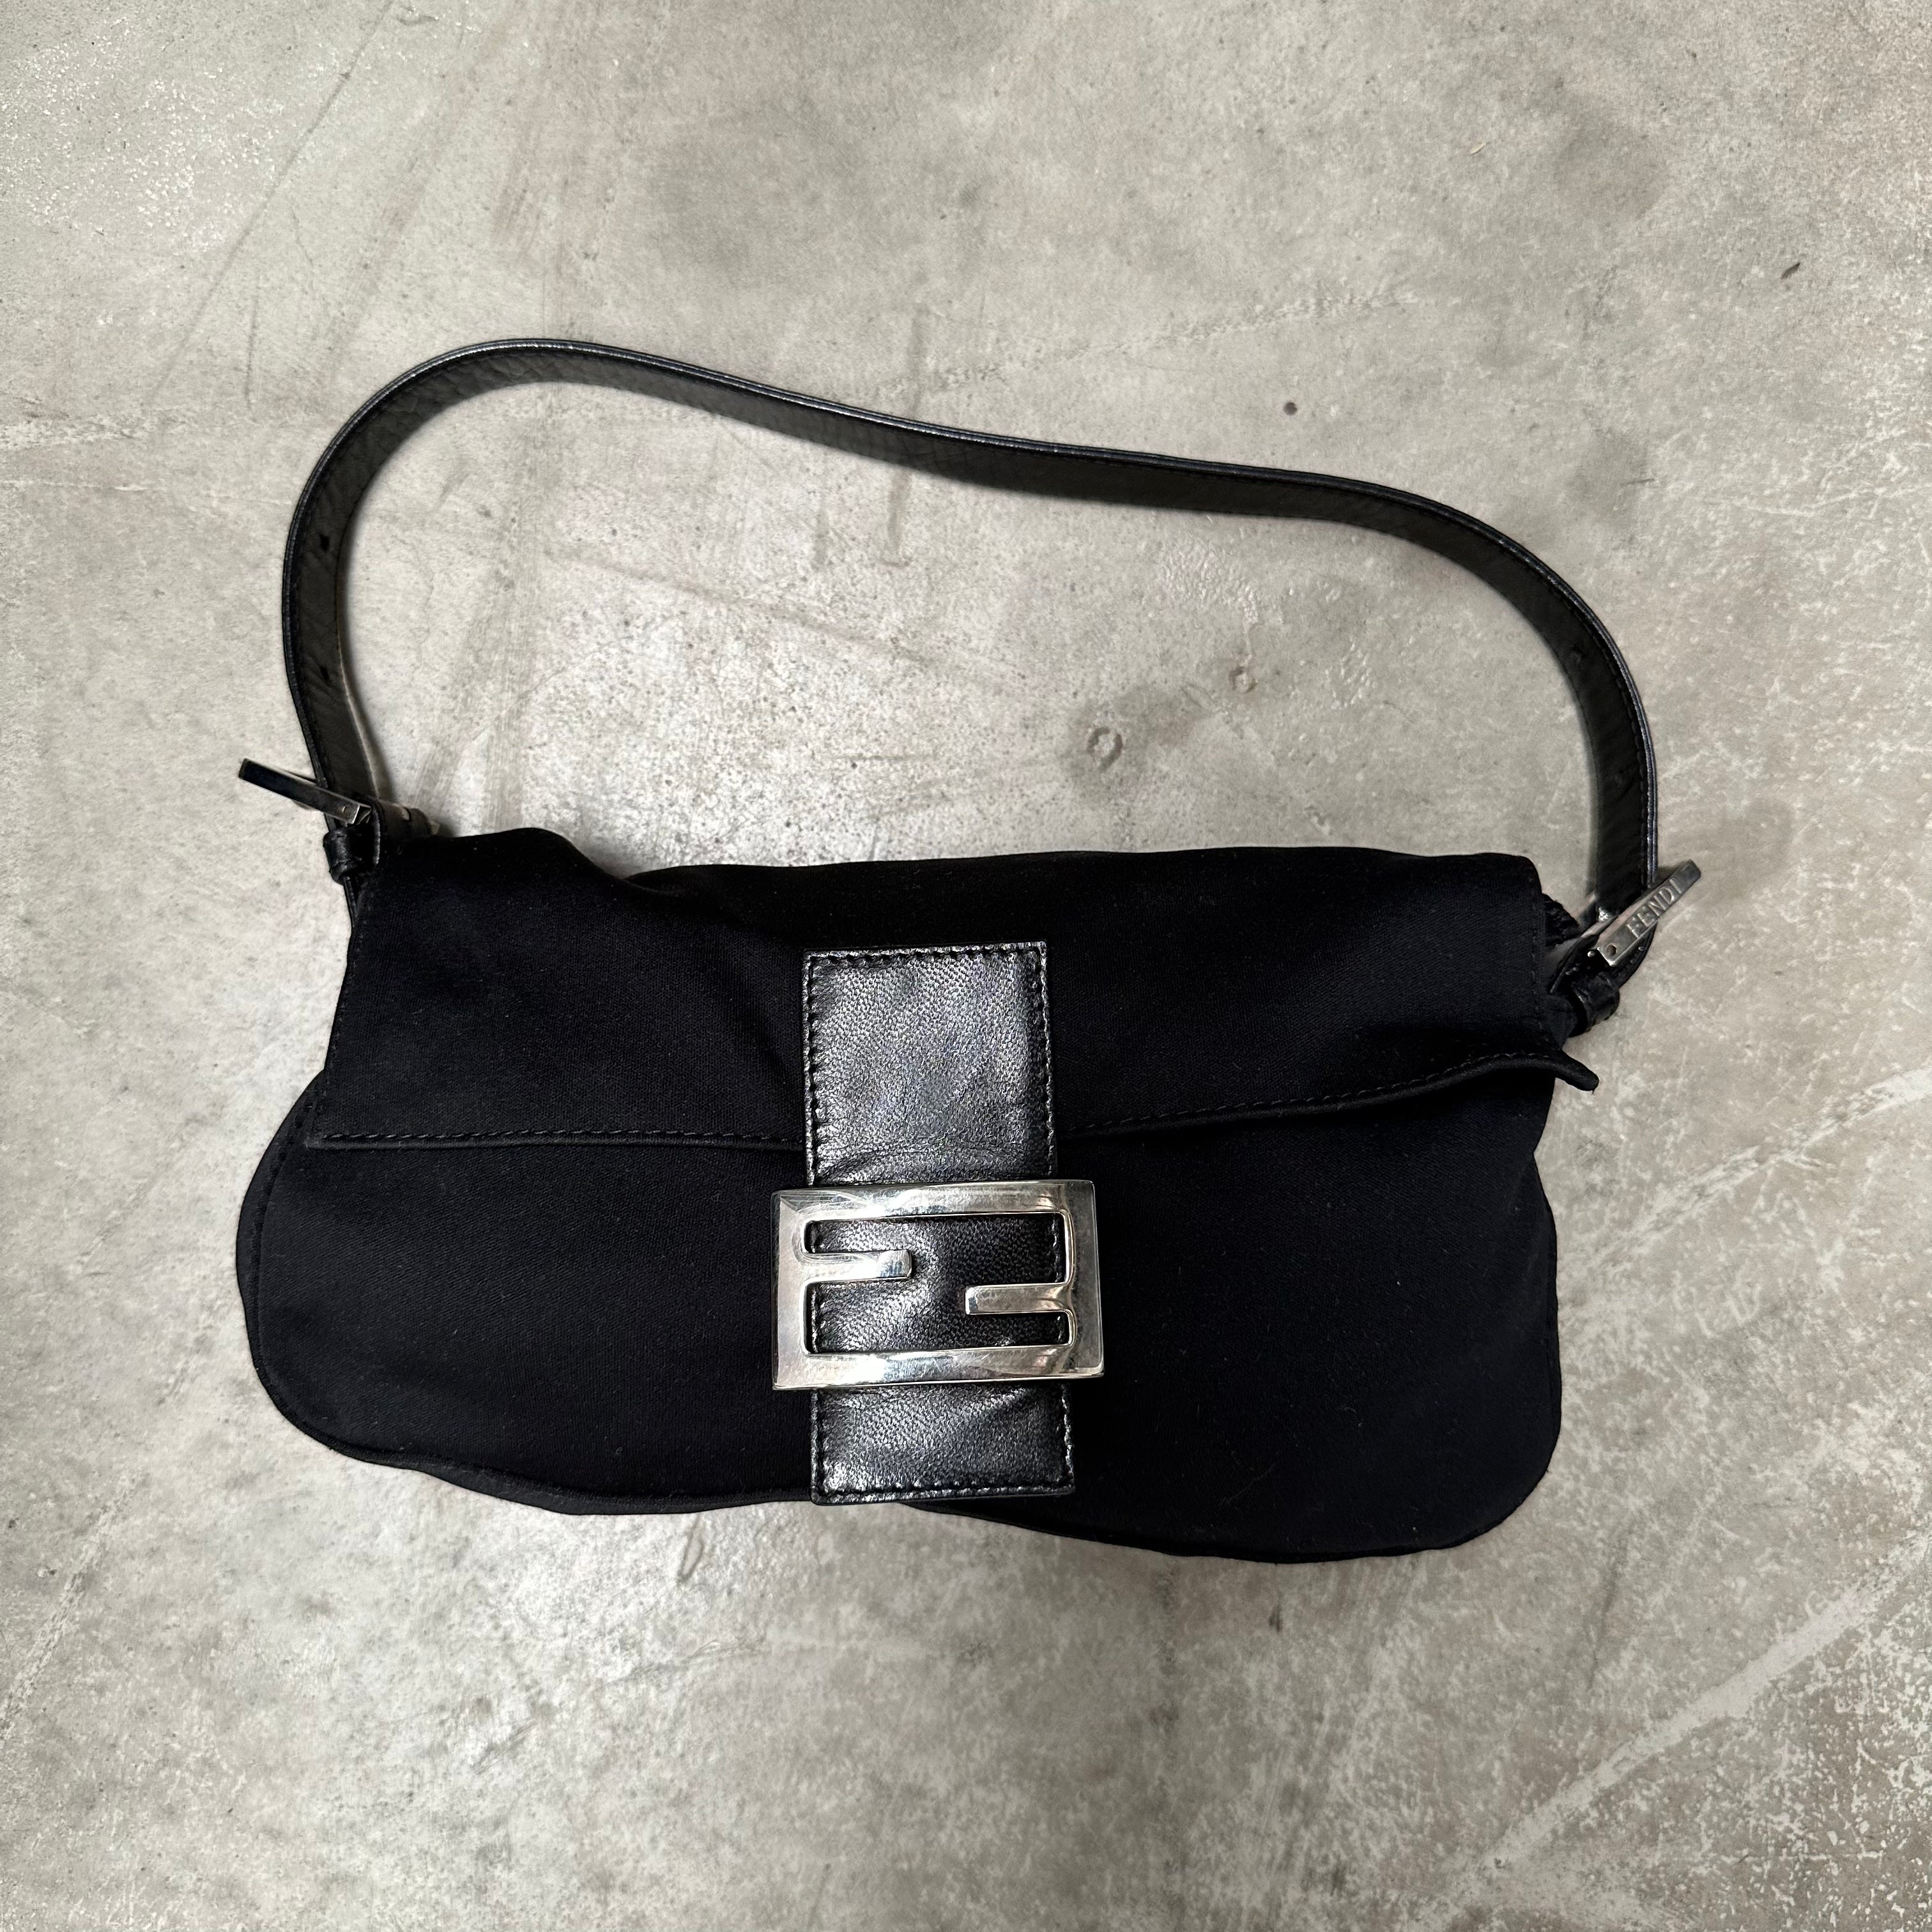 Fendi Black Baguette Bag with Silver Hardware